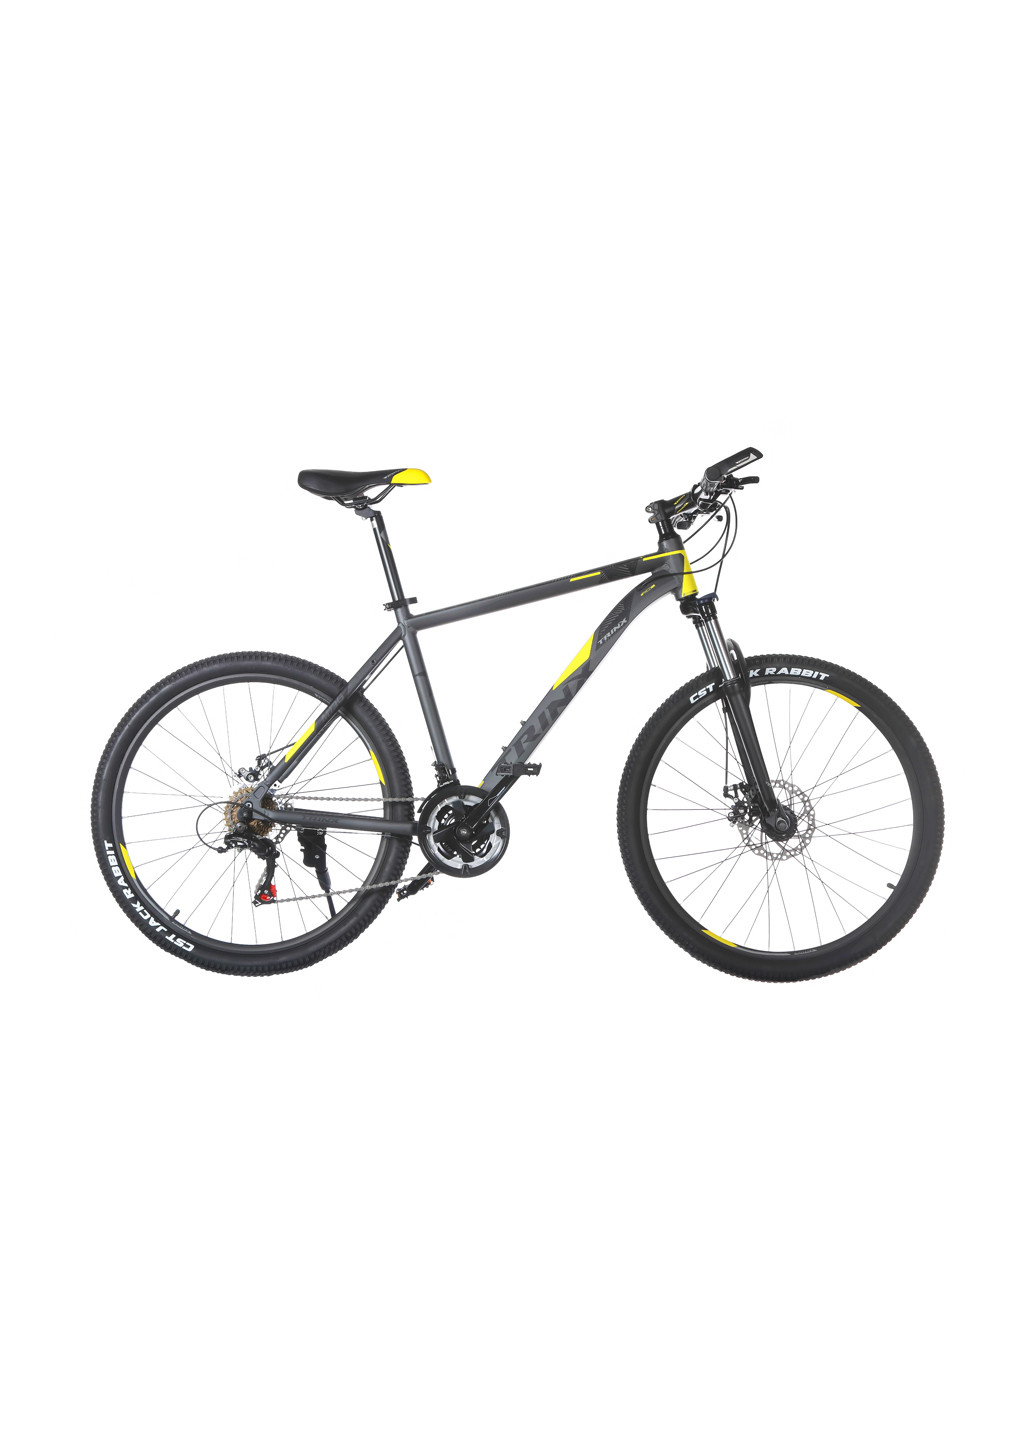 Велосипед M136 26 "x17" Matt-Grey-Yellow-Black Trinx m136 26"x17" matt-grey-yellow-black (146489488)